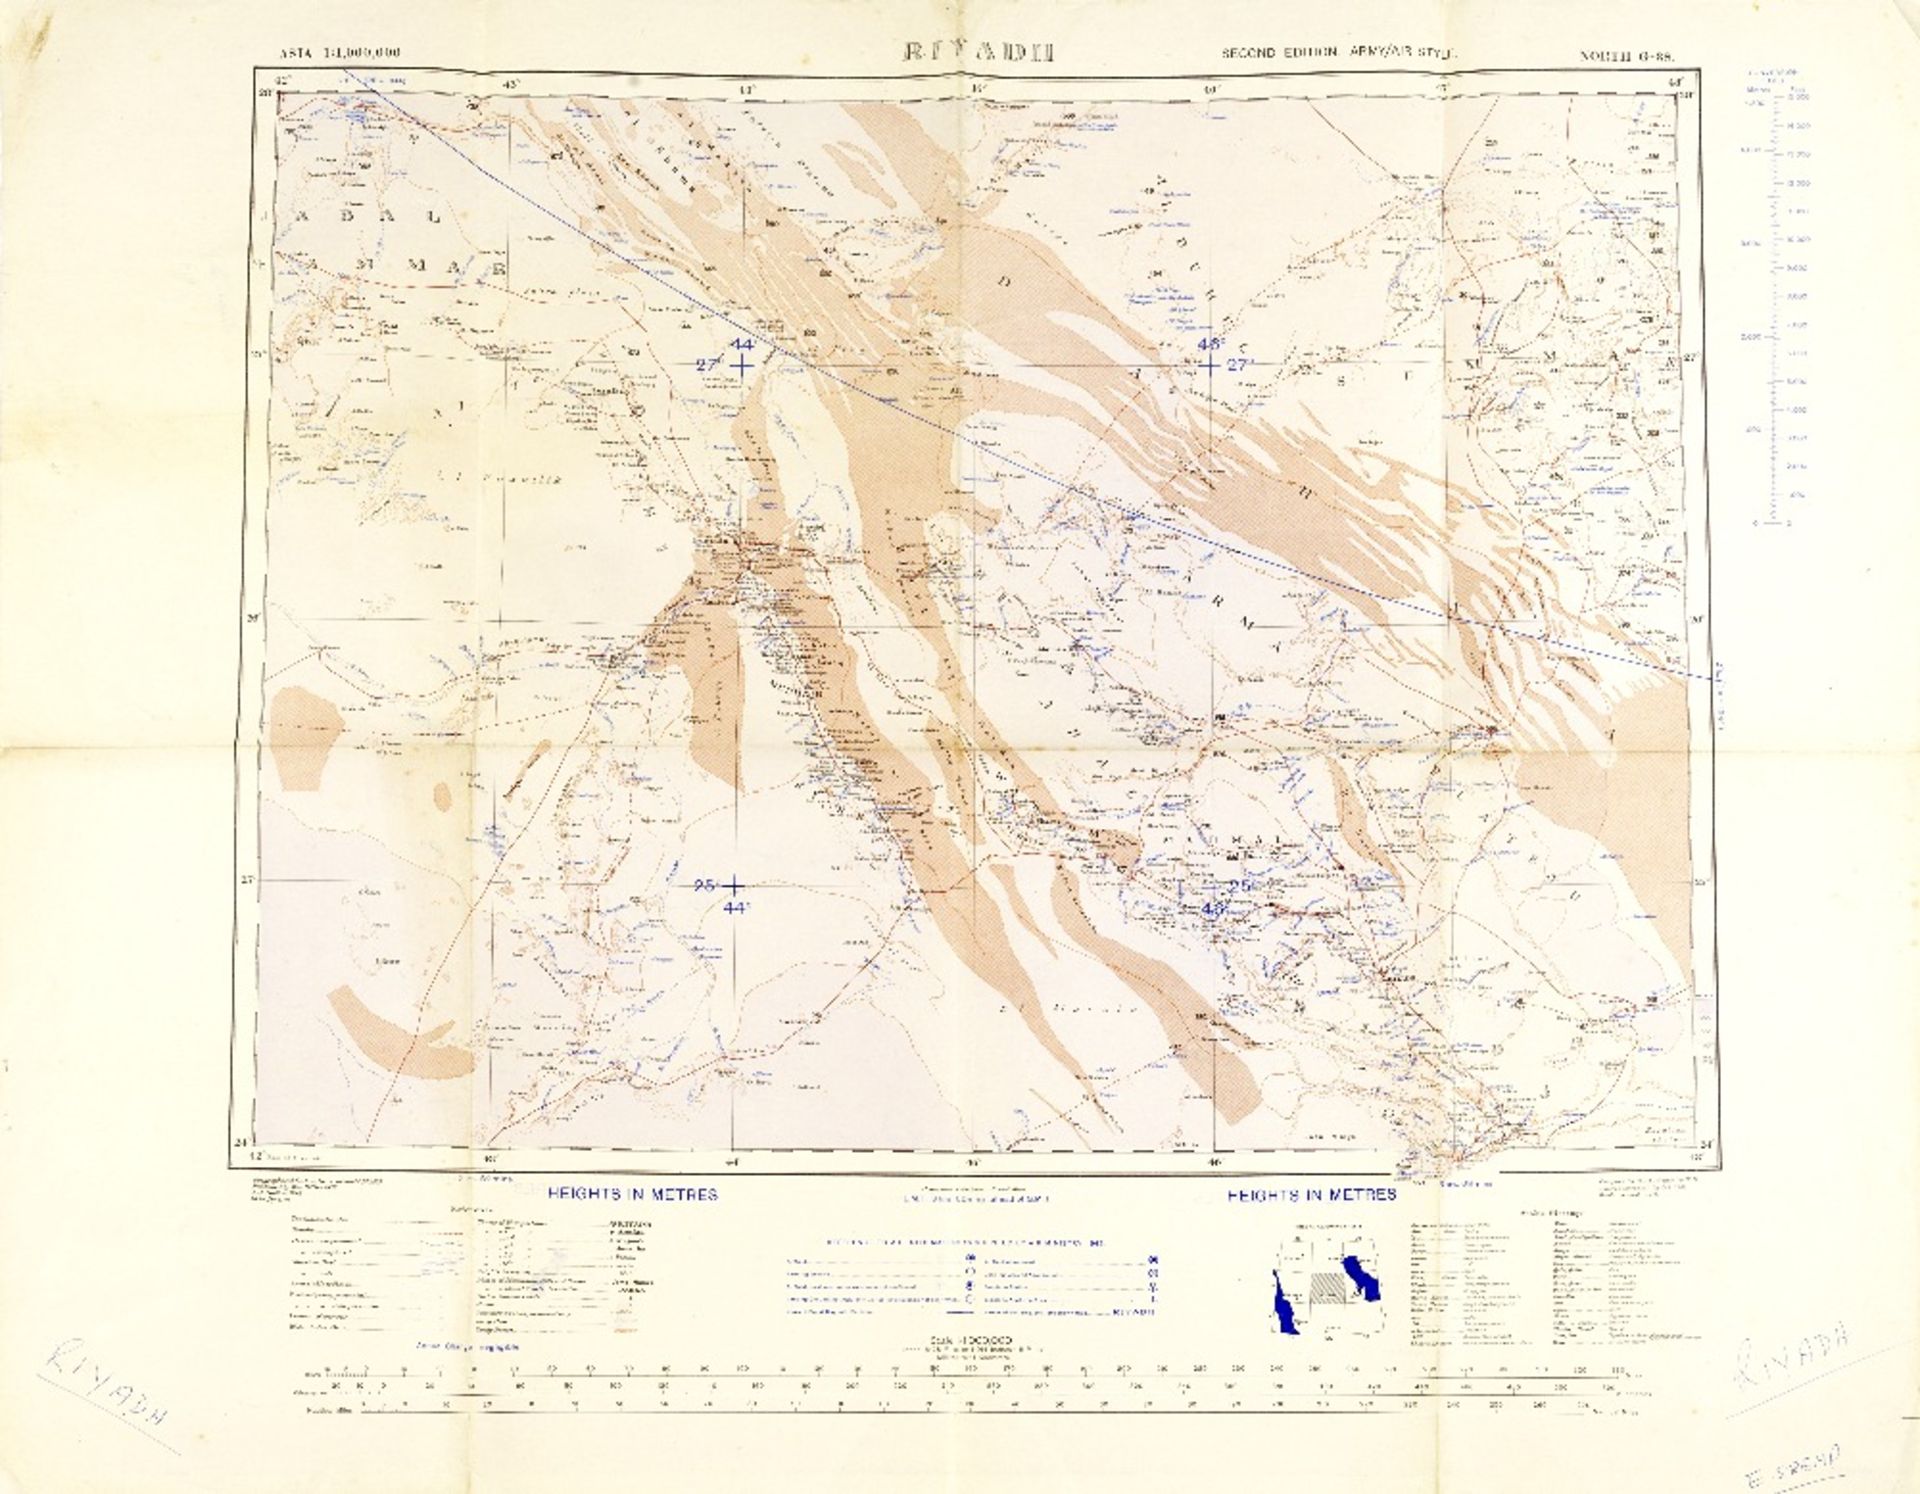 RIYADH, SAUDI ARABIA War office map of Riyadh, Geographical Section, War Office, 1945